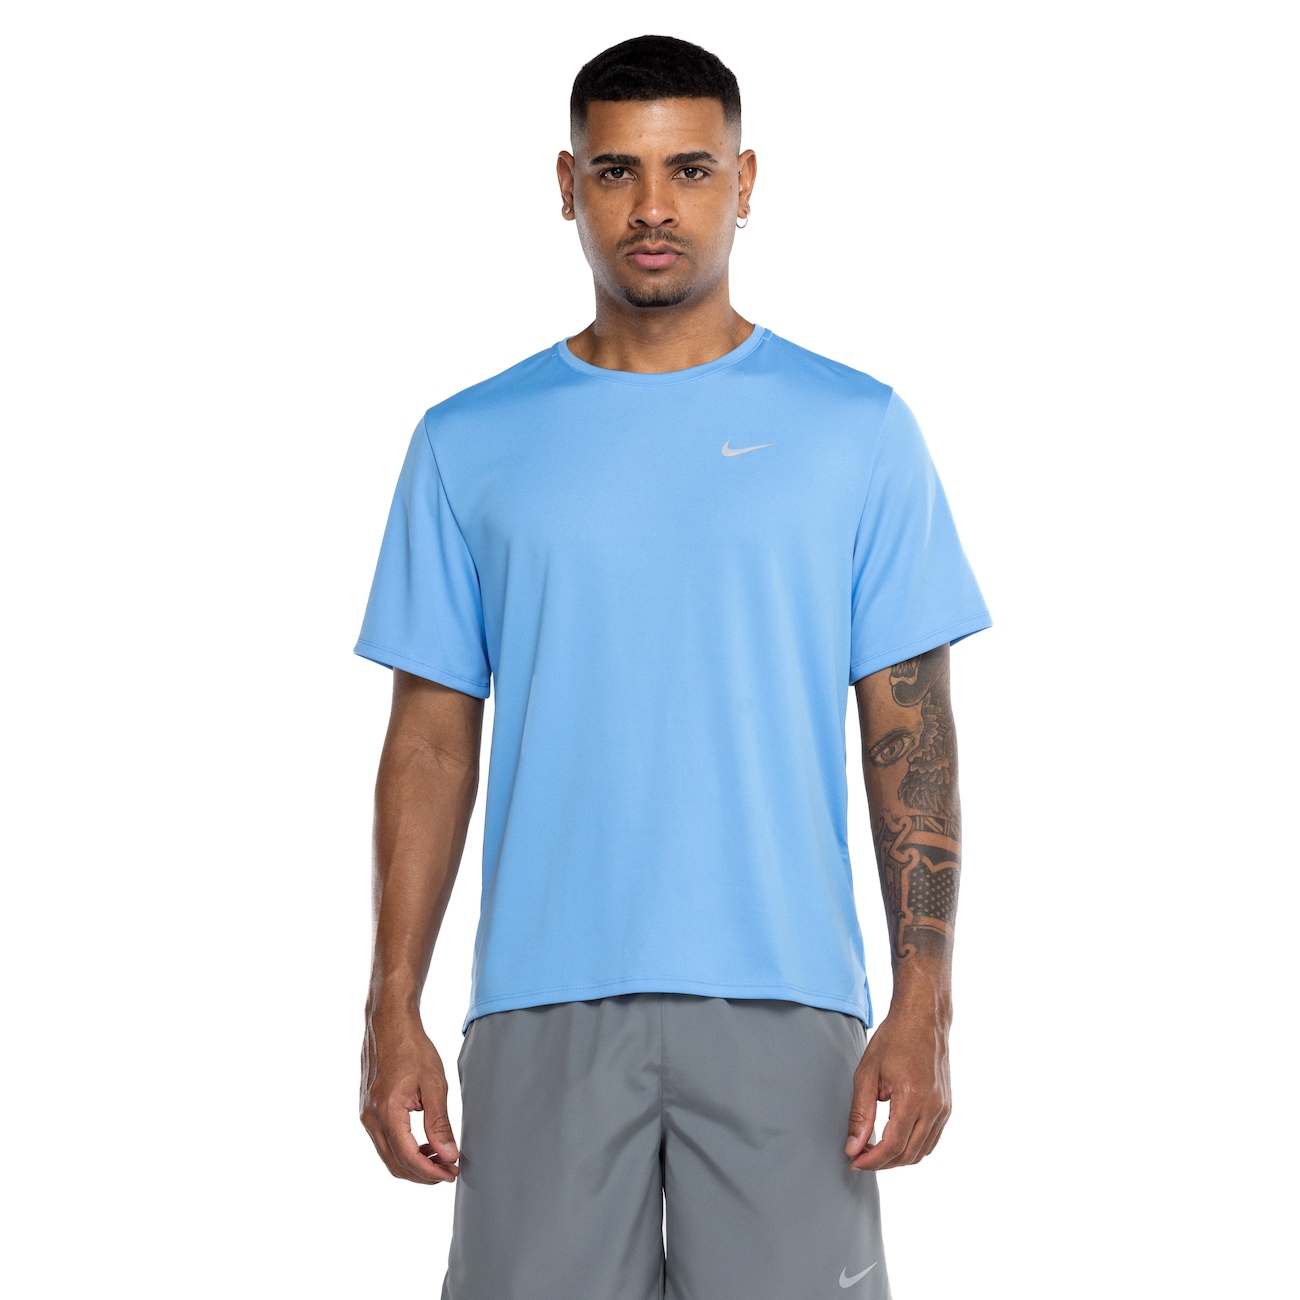 Camiseta Masculina Nike Manga Curta com Proteção UV Miler